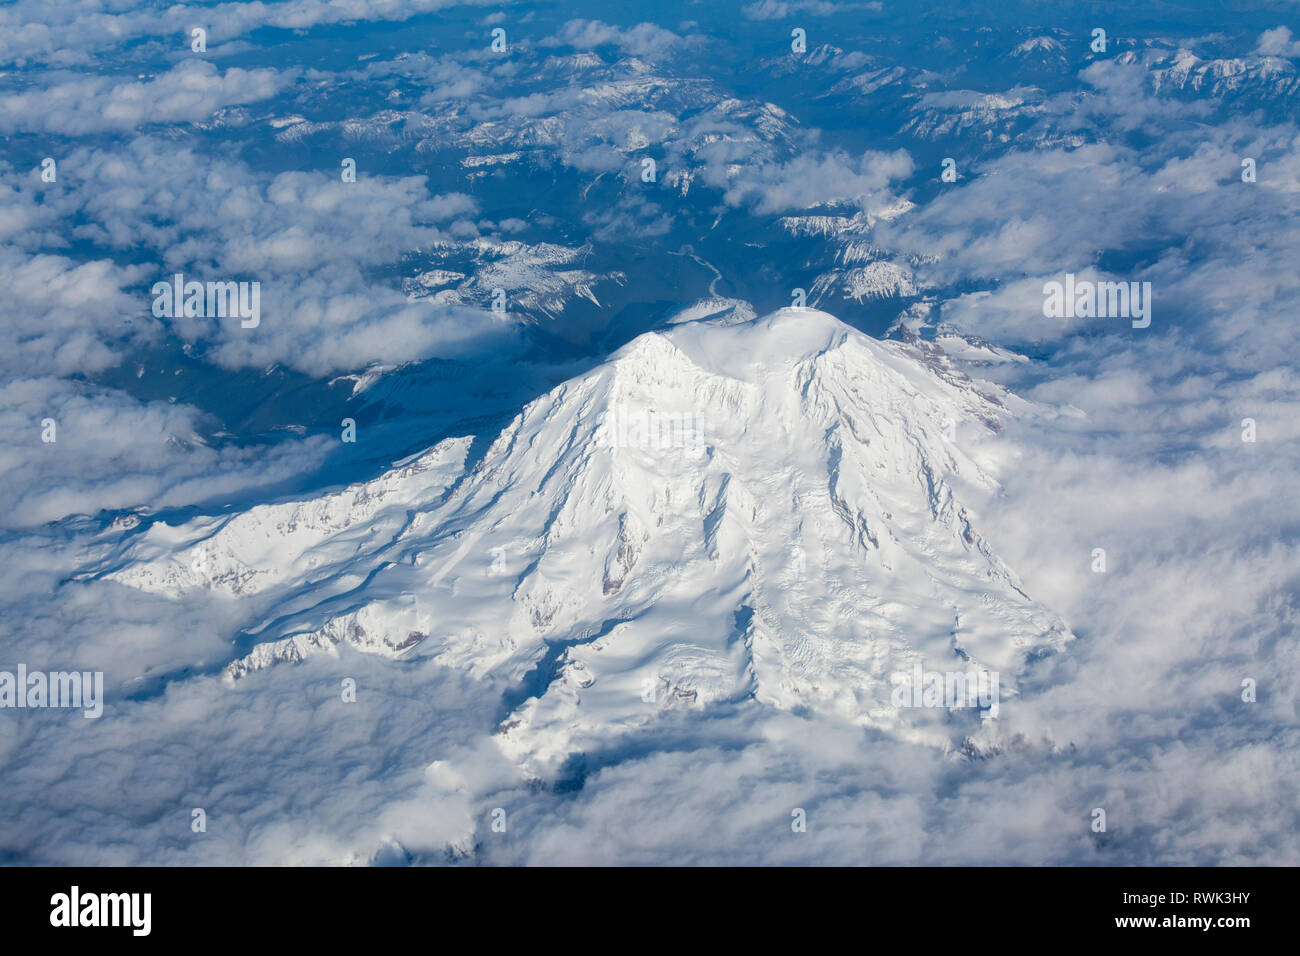 Mount Ranier, Washington, USA, from aircraft. Stock Photo